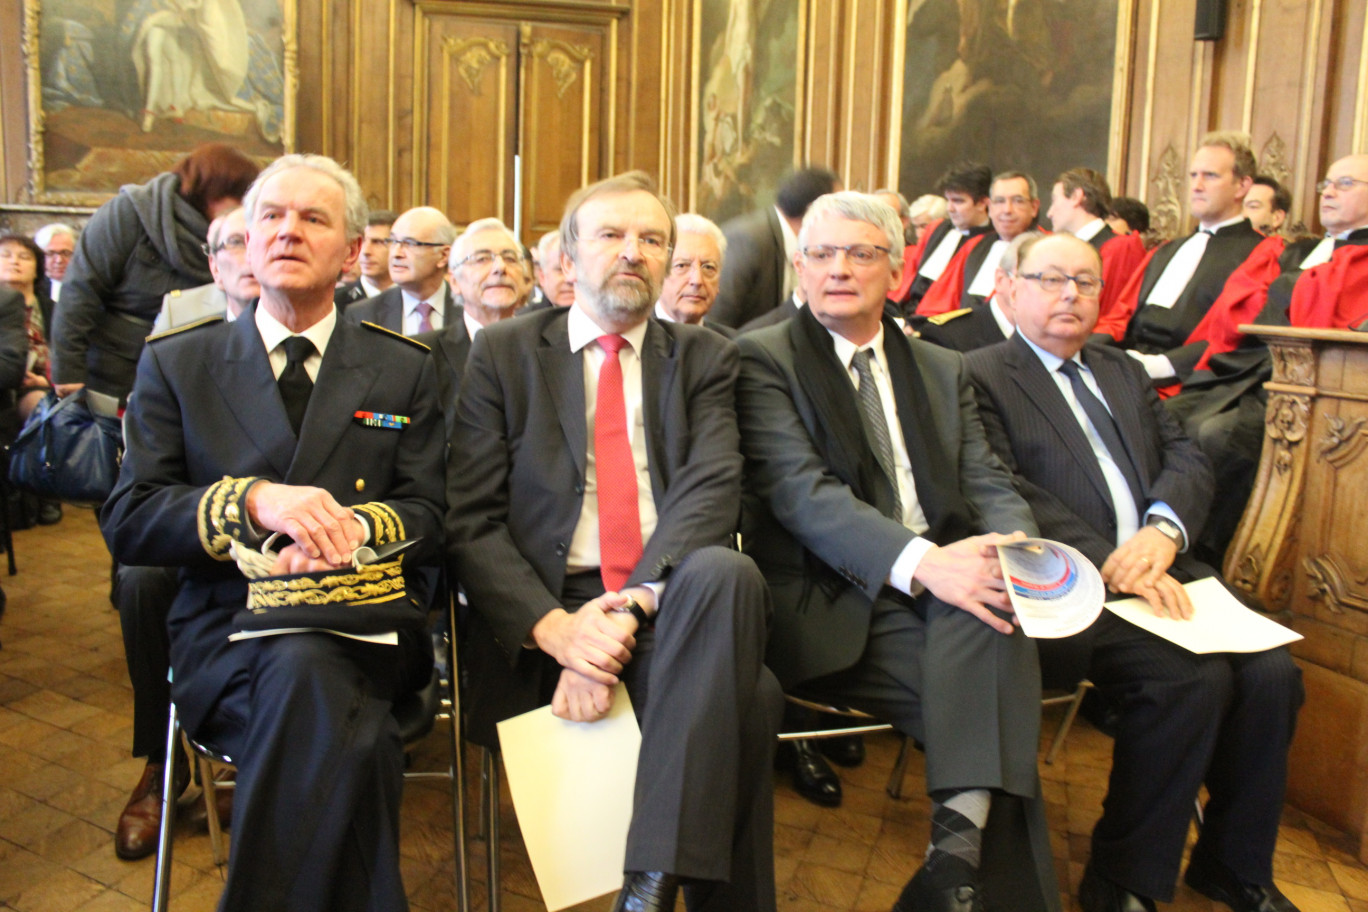 Le parlement des Flandres affichait complet avec notamment le préfet de Région, D.Bur, J.-J.Candelier, Thierry Lazaro, députés, et Dominique Dupilet, président du CG 62.